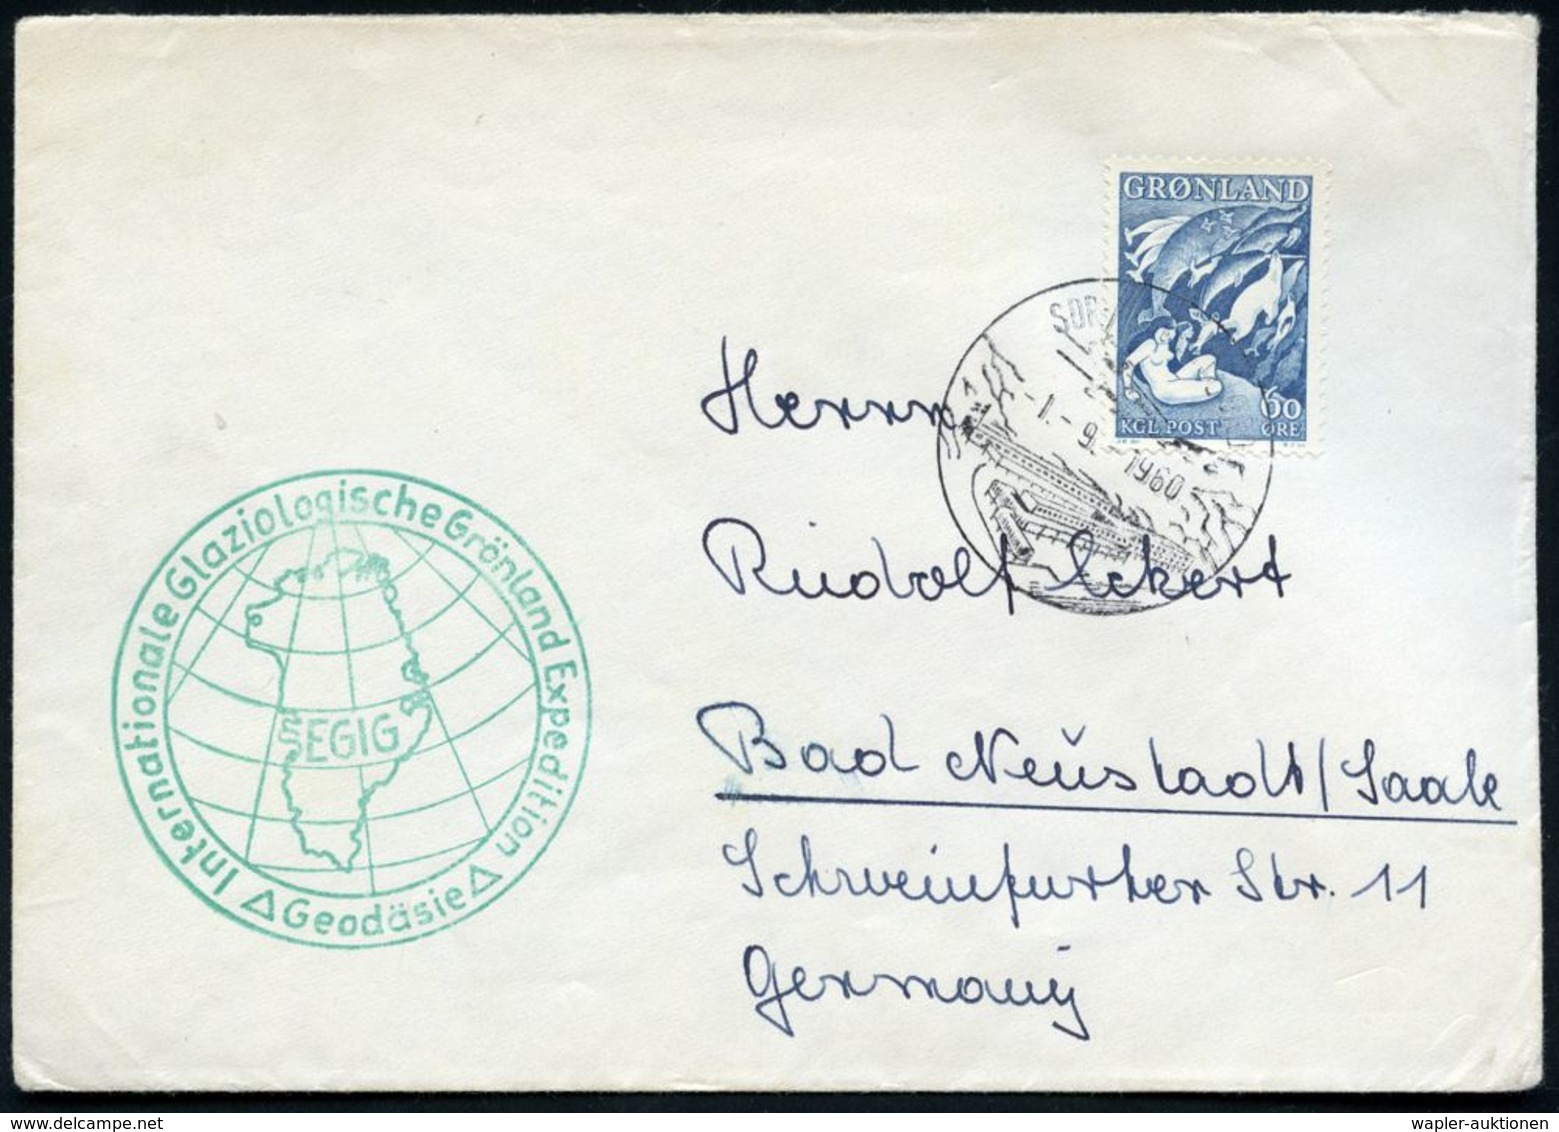 GRÖNLAND 1960 (1.9.) HWSt.: SDR. STRÖMFJORD (Gebäude) A.EF 60 Ö. "Mutter Des Meeers" (Wal-Motiv!) + Grüner HdN: Internat - Expéditions Arctiques